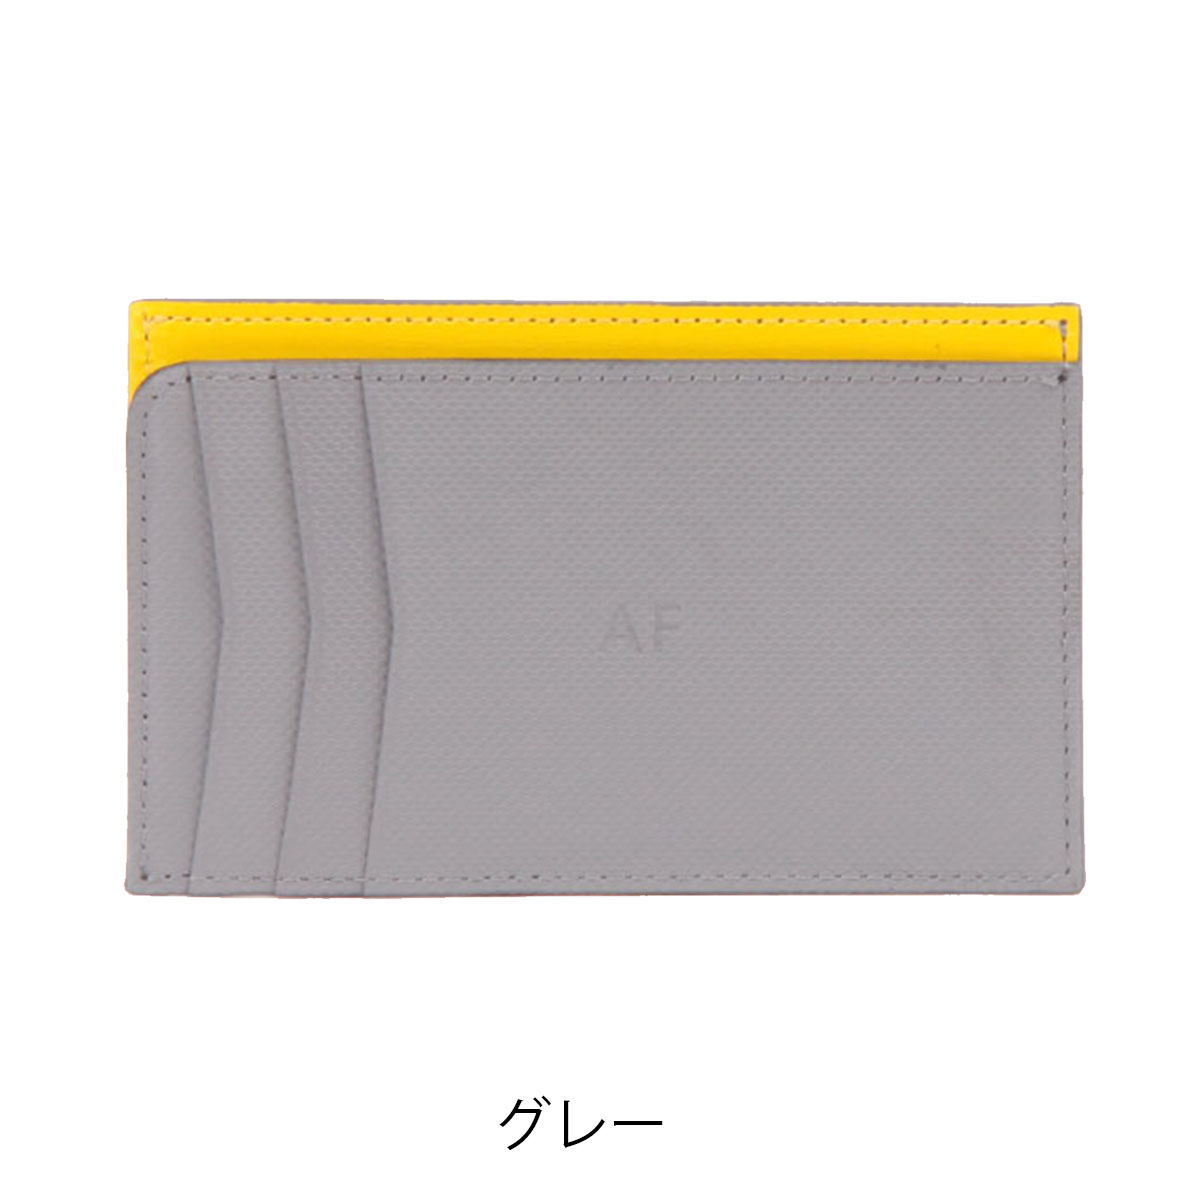 エアフリーク ミニ財布 メンズ レディース AF15 Airfreak コンパクト 